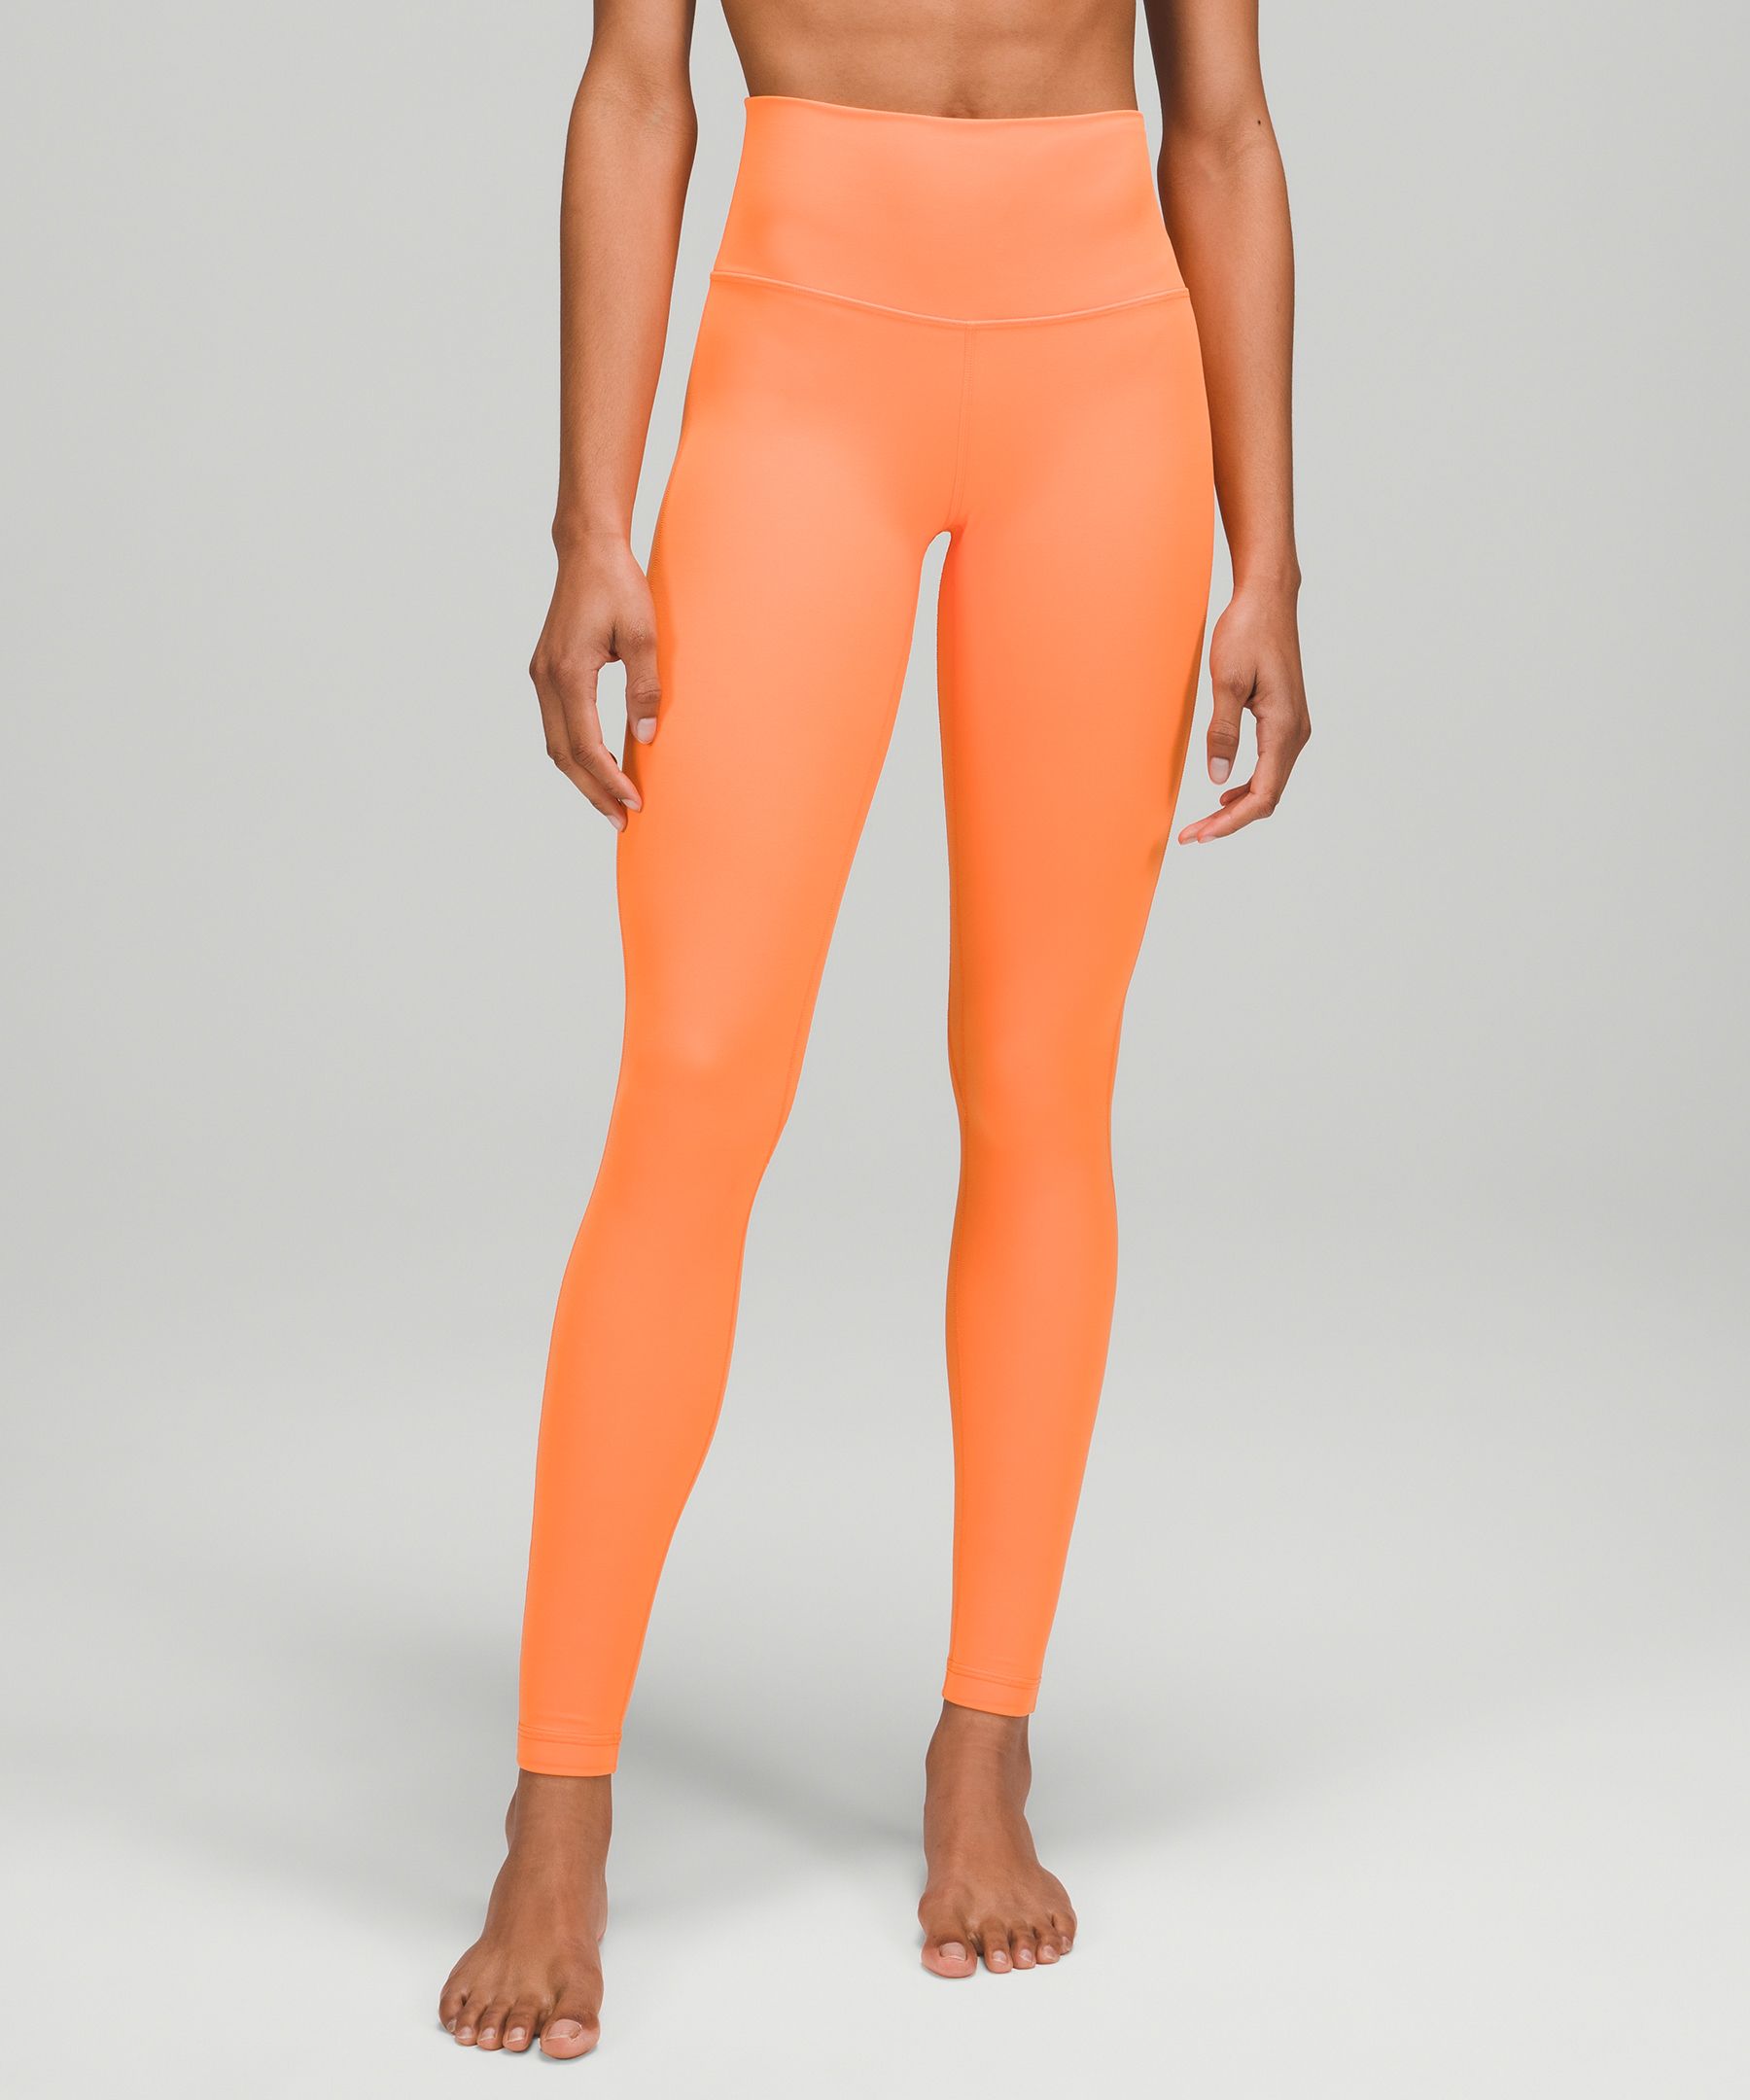 Lululemon Align™ High-rise Pants 28" In Orange Soda